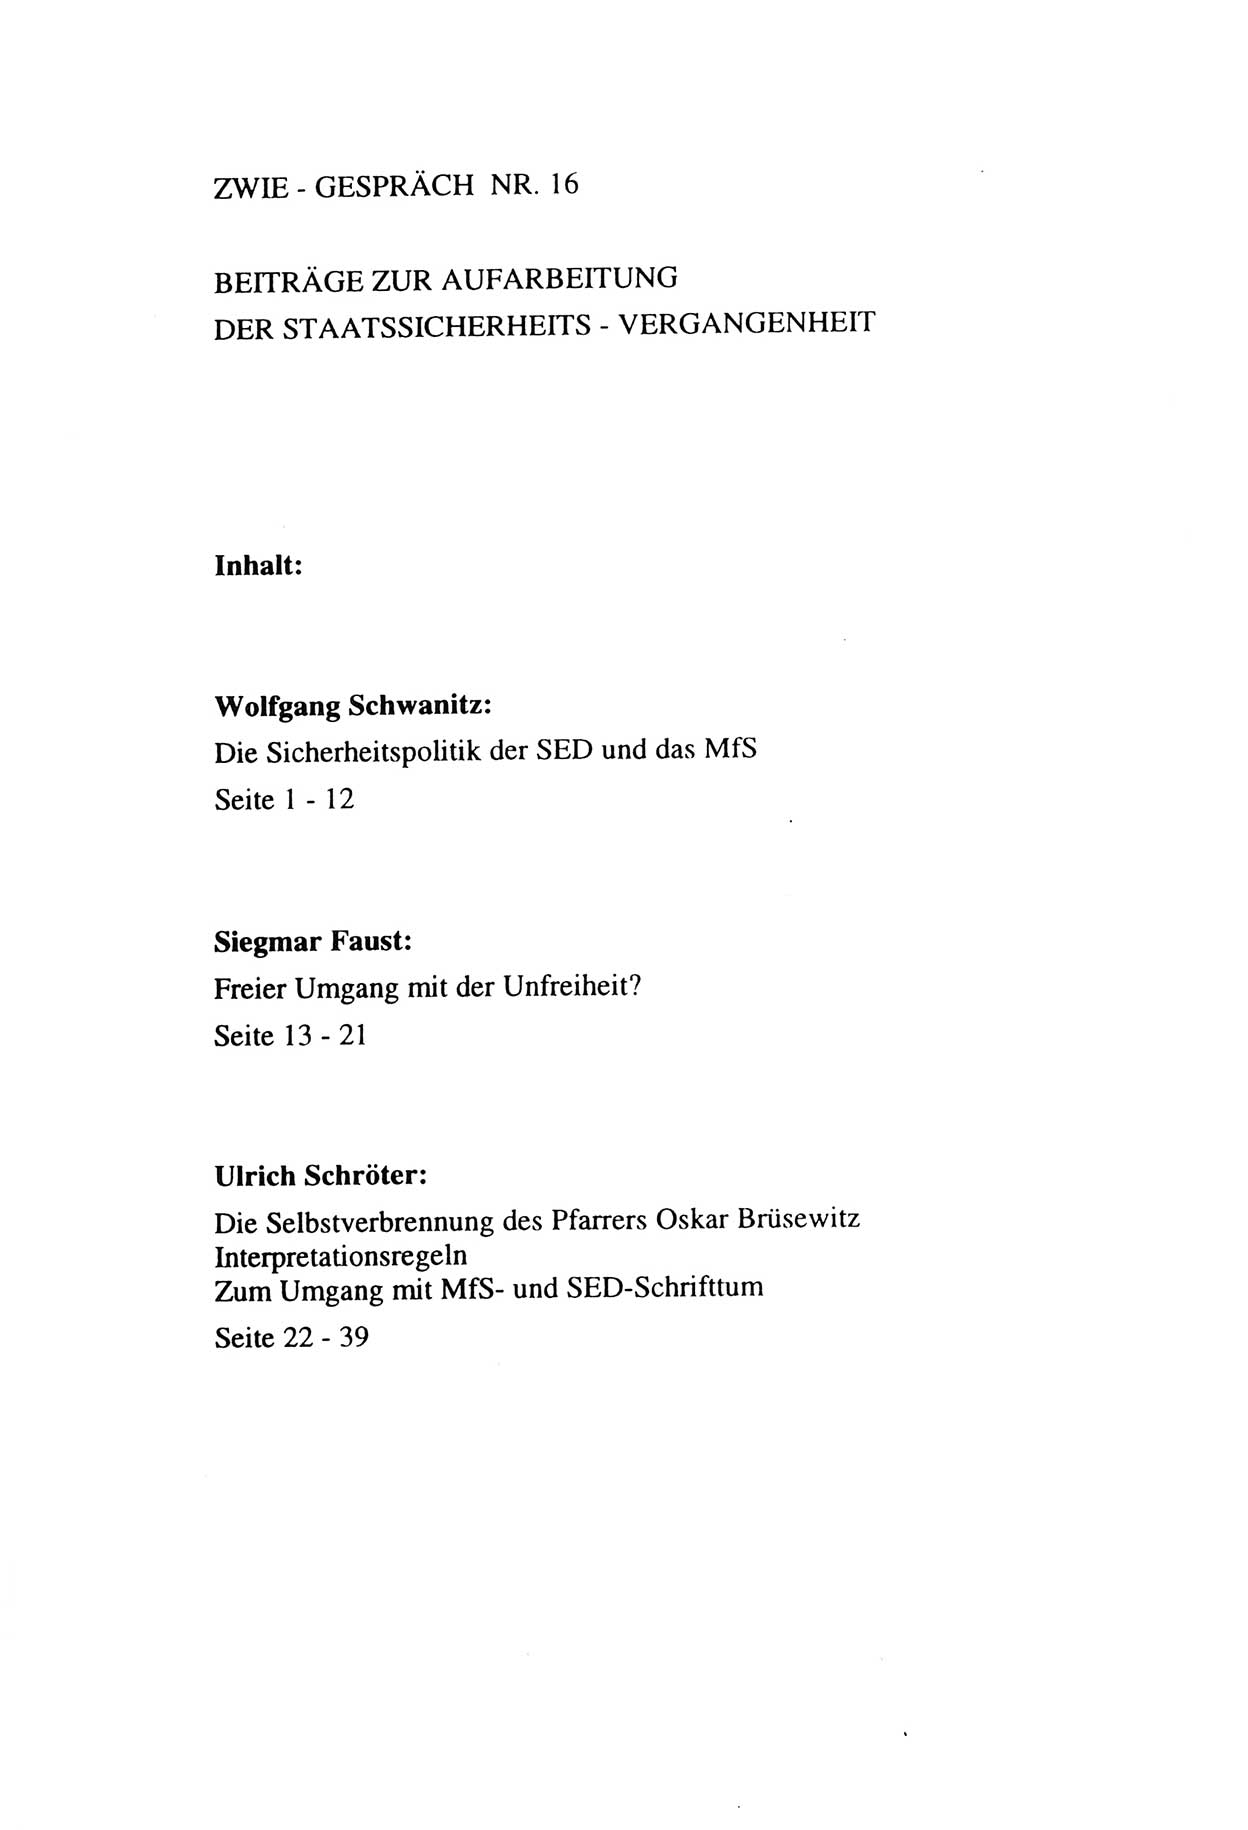 Zwie-Gespräch, Beiträge zur Aufarbeitung der Staatssicherheits-Vergangenheit [Deutsche Demokratische Republik (DDR)], Ausgabe Nr. 16, Berlin 1993, Seite 41 (Zwie-Gespr. Ausg. 16 1993, S. 41)